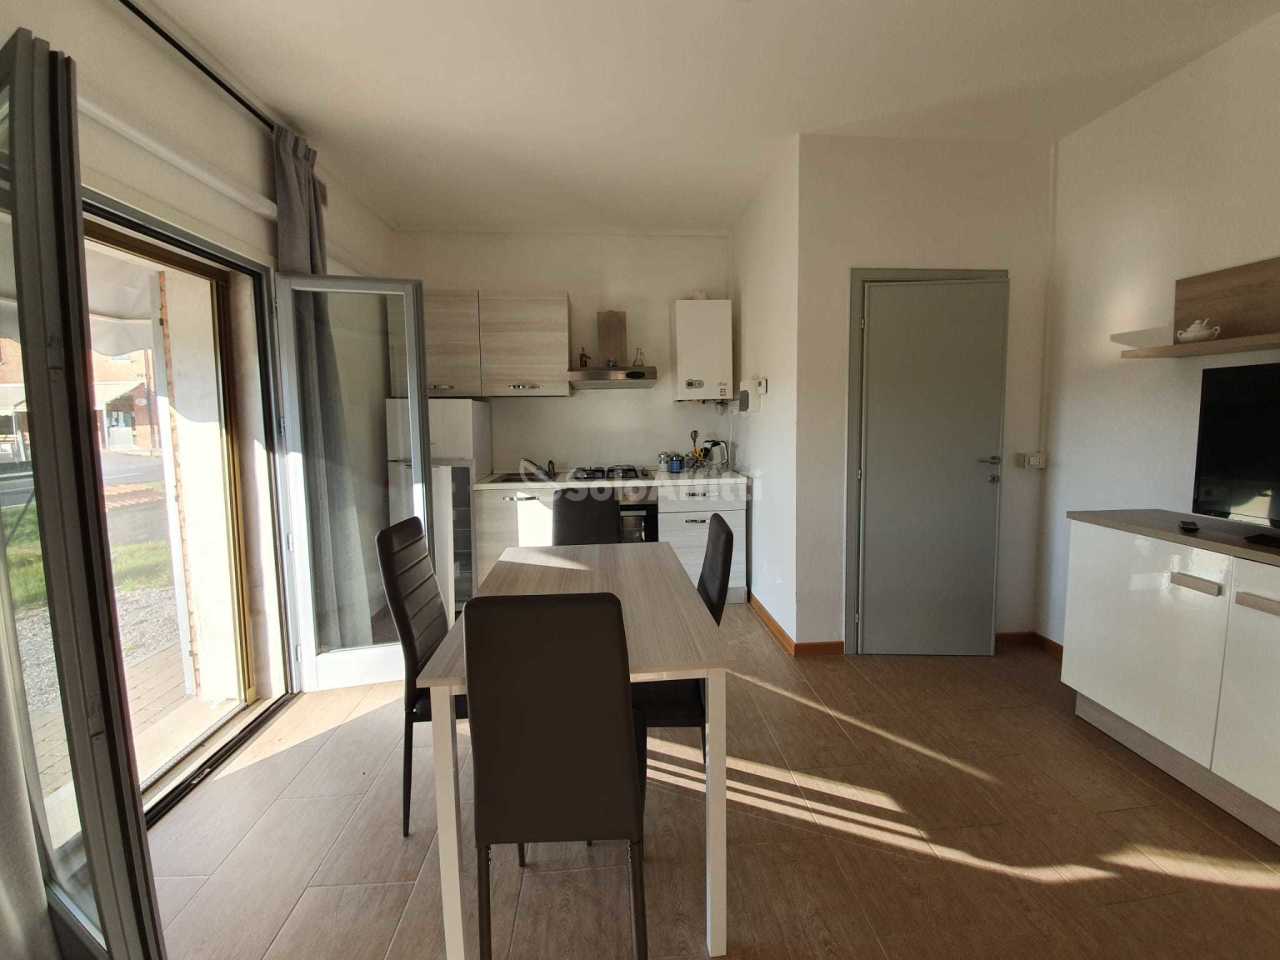 Appartamento in affitto a Foiano della Chiana, 2 locali, prezzo € 400 | PortaleAgenzieImmobiliari.it